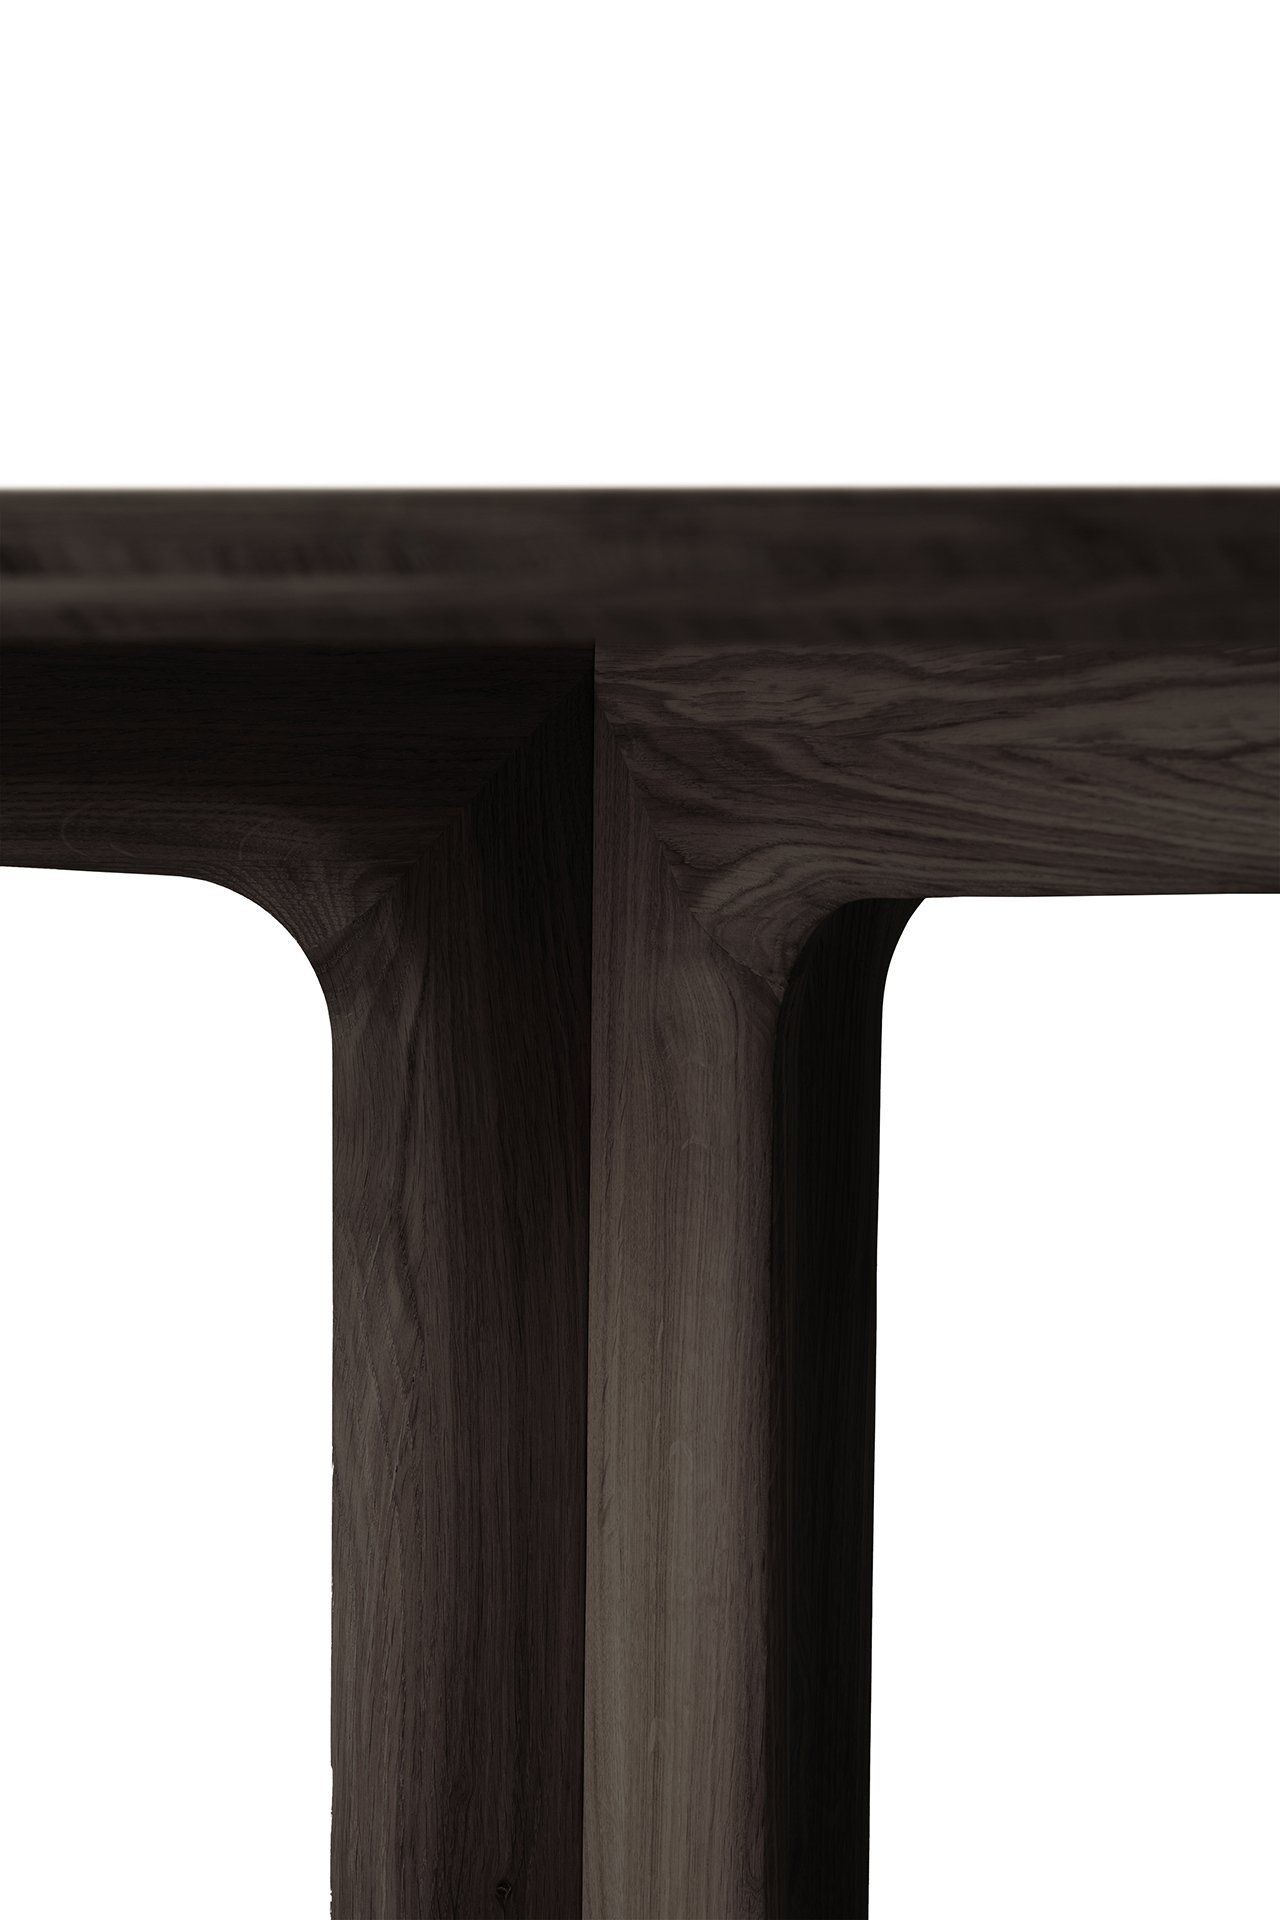 Ethnicraft Corto Tisch quadratisch 150 x 150 cm-Oak Brown--11